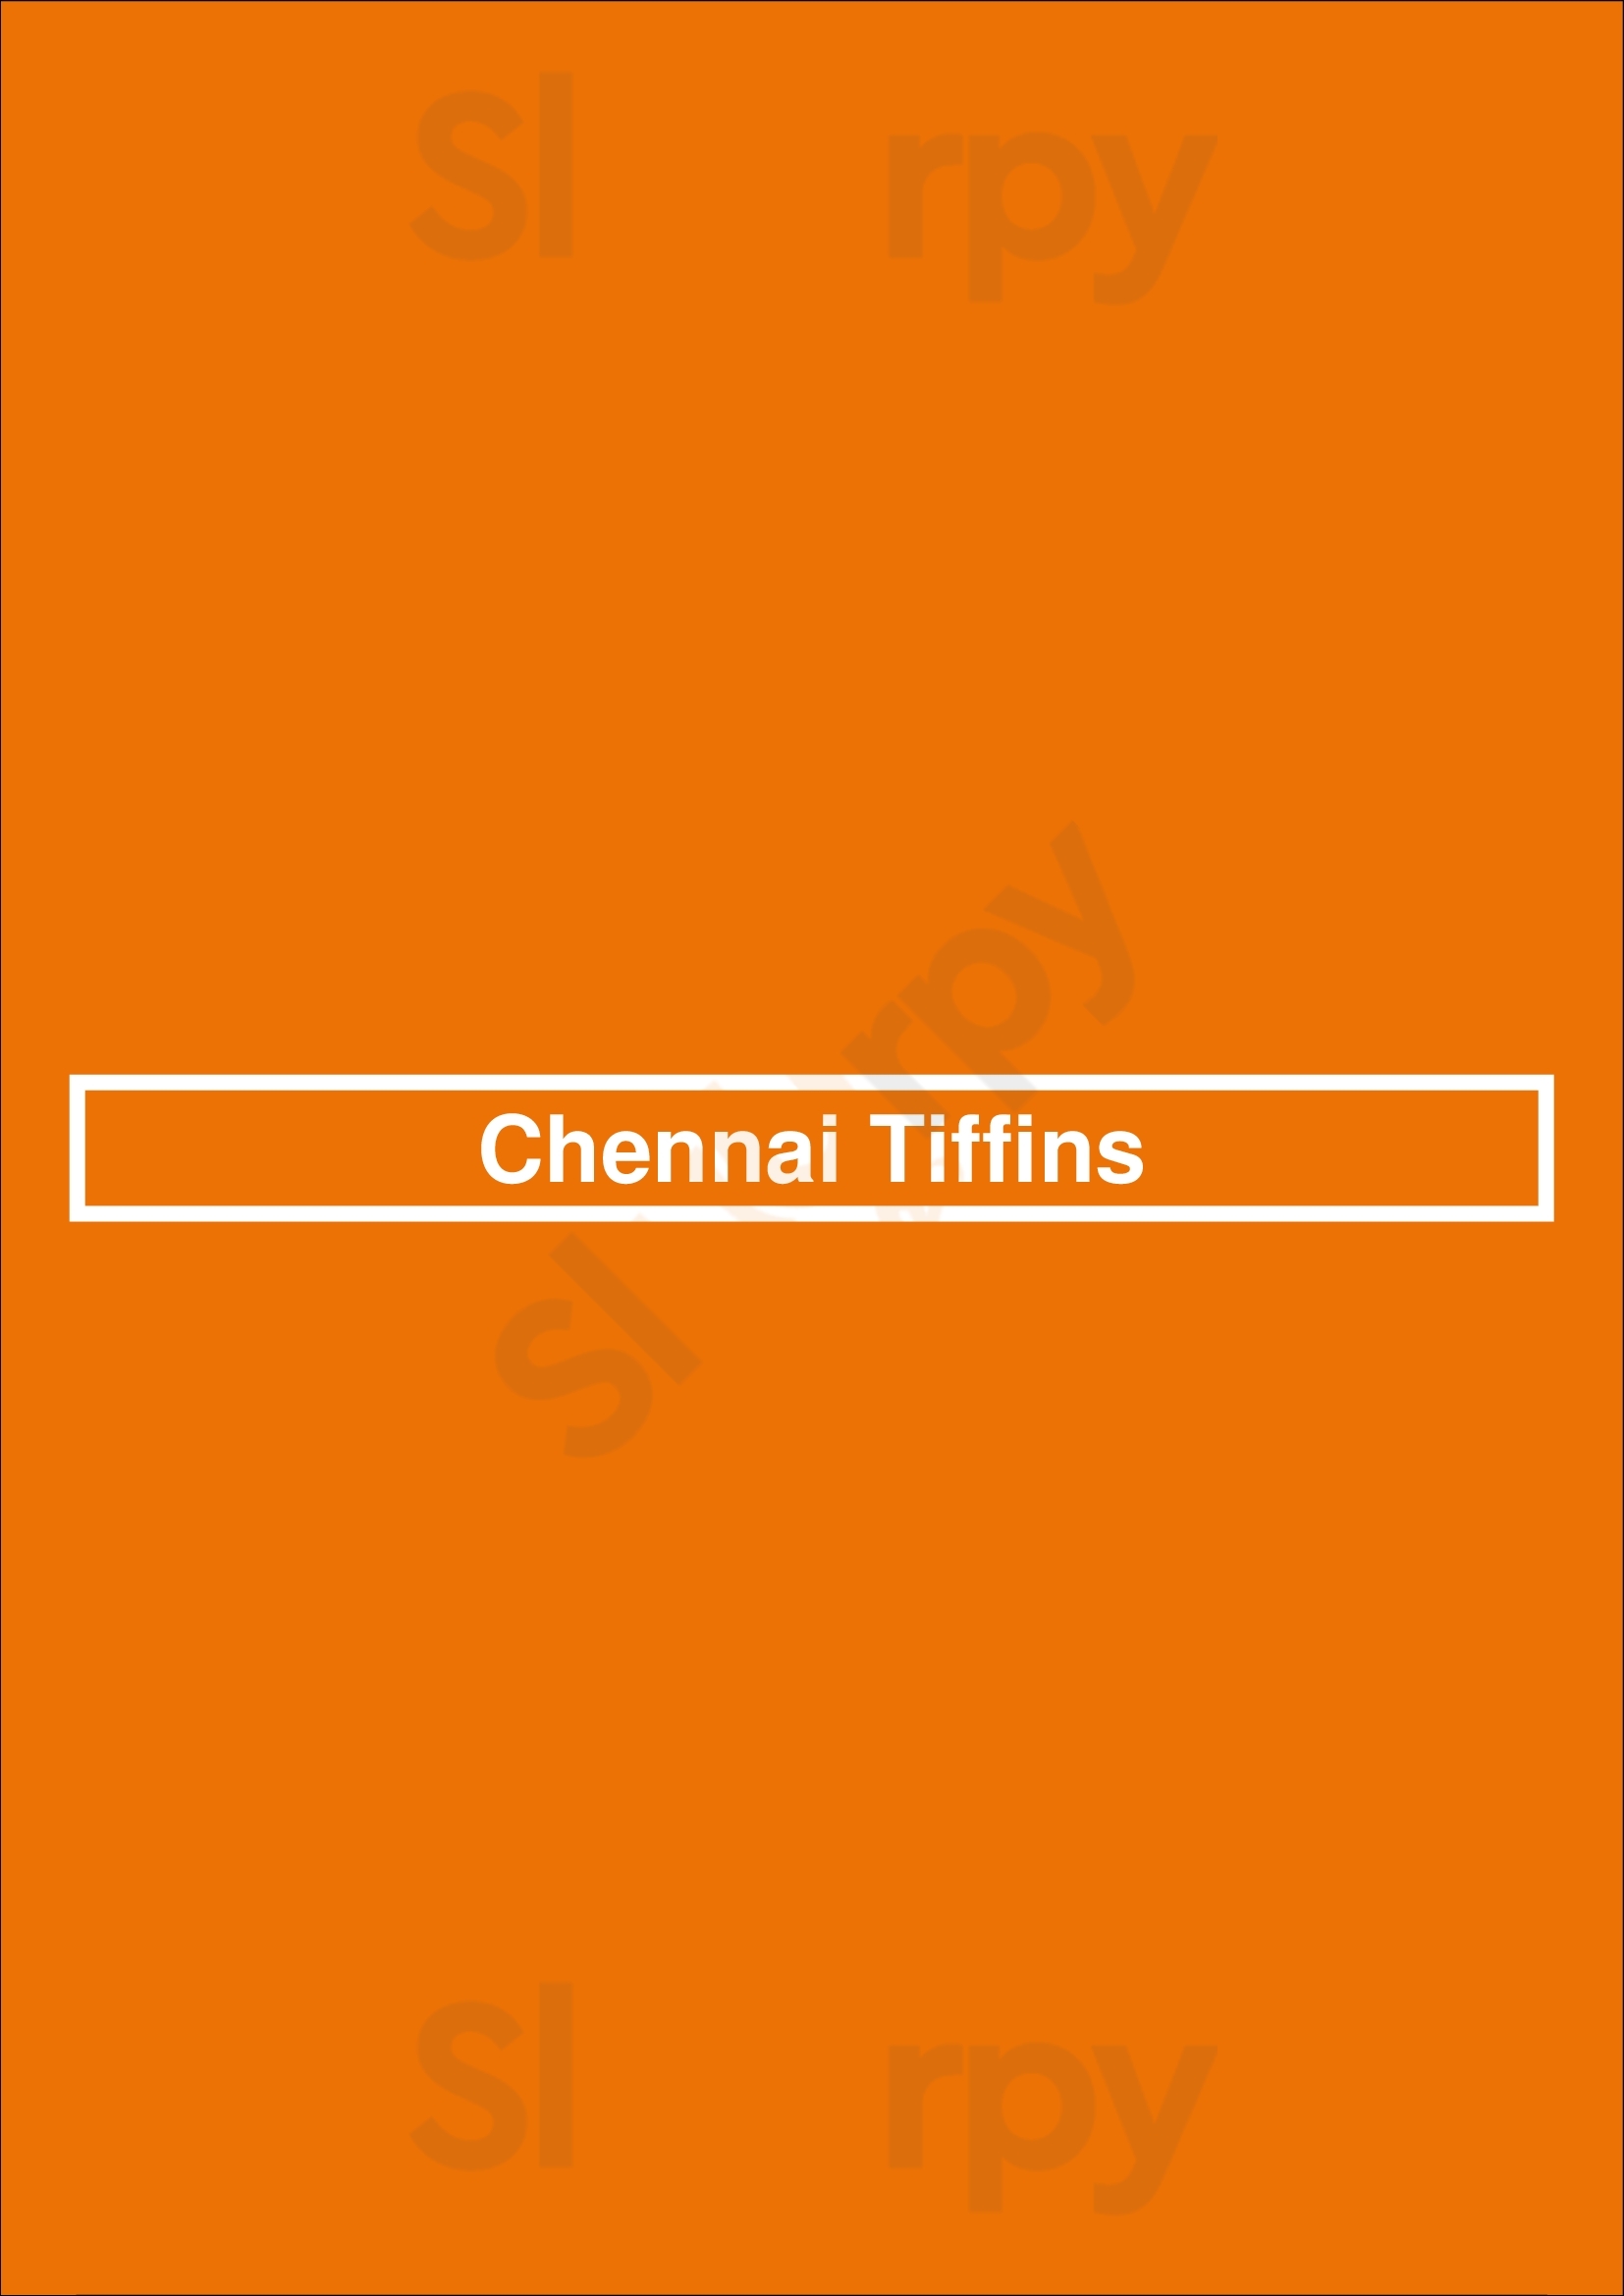 Chennai Tiffins Los Angeles Menu - 1